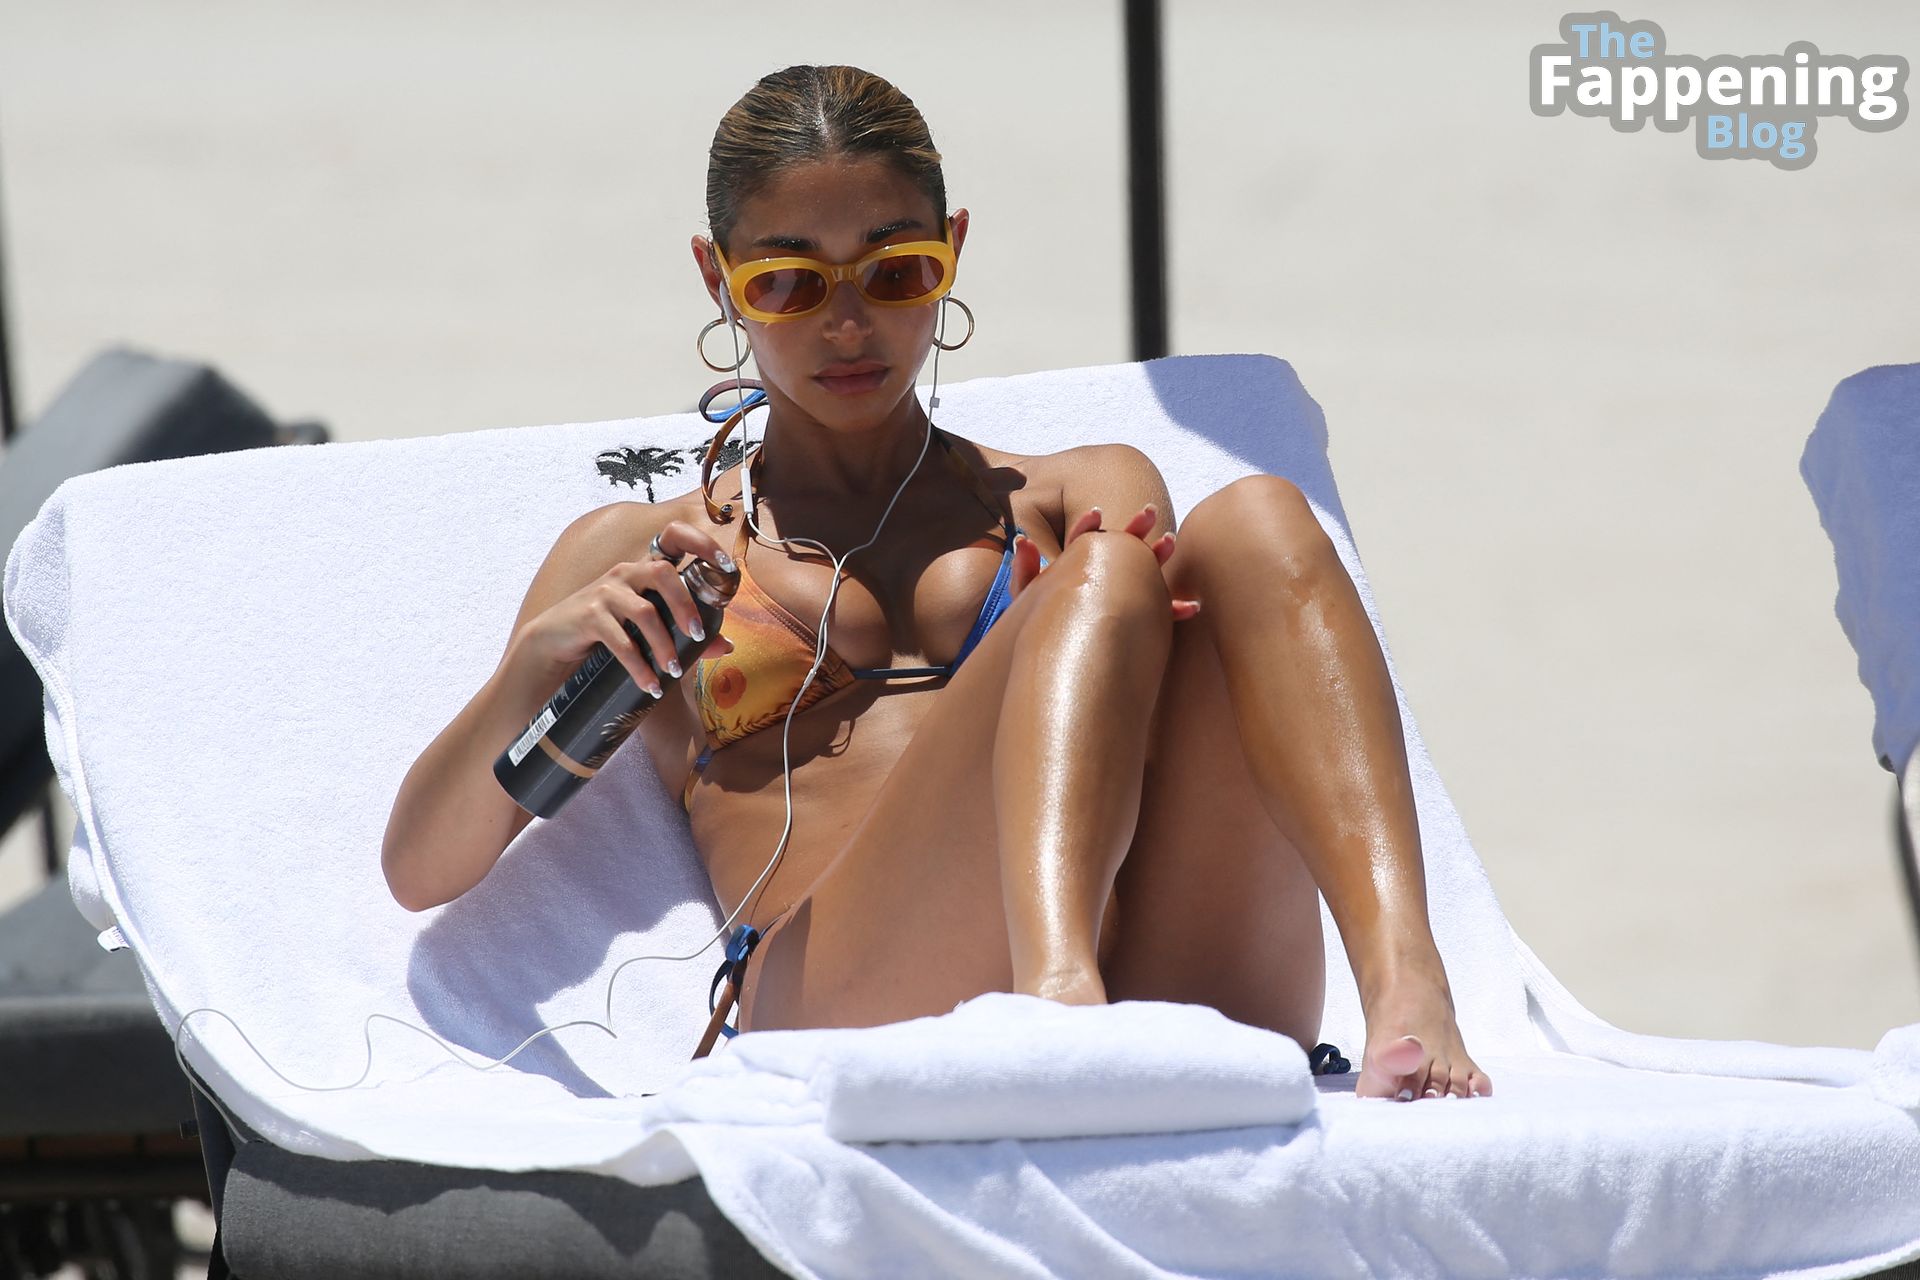 Chantel Jeffries Shows Off Her Gorgeous Bikini Body on the Beach in Miami (24 Photos)